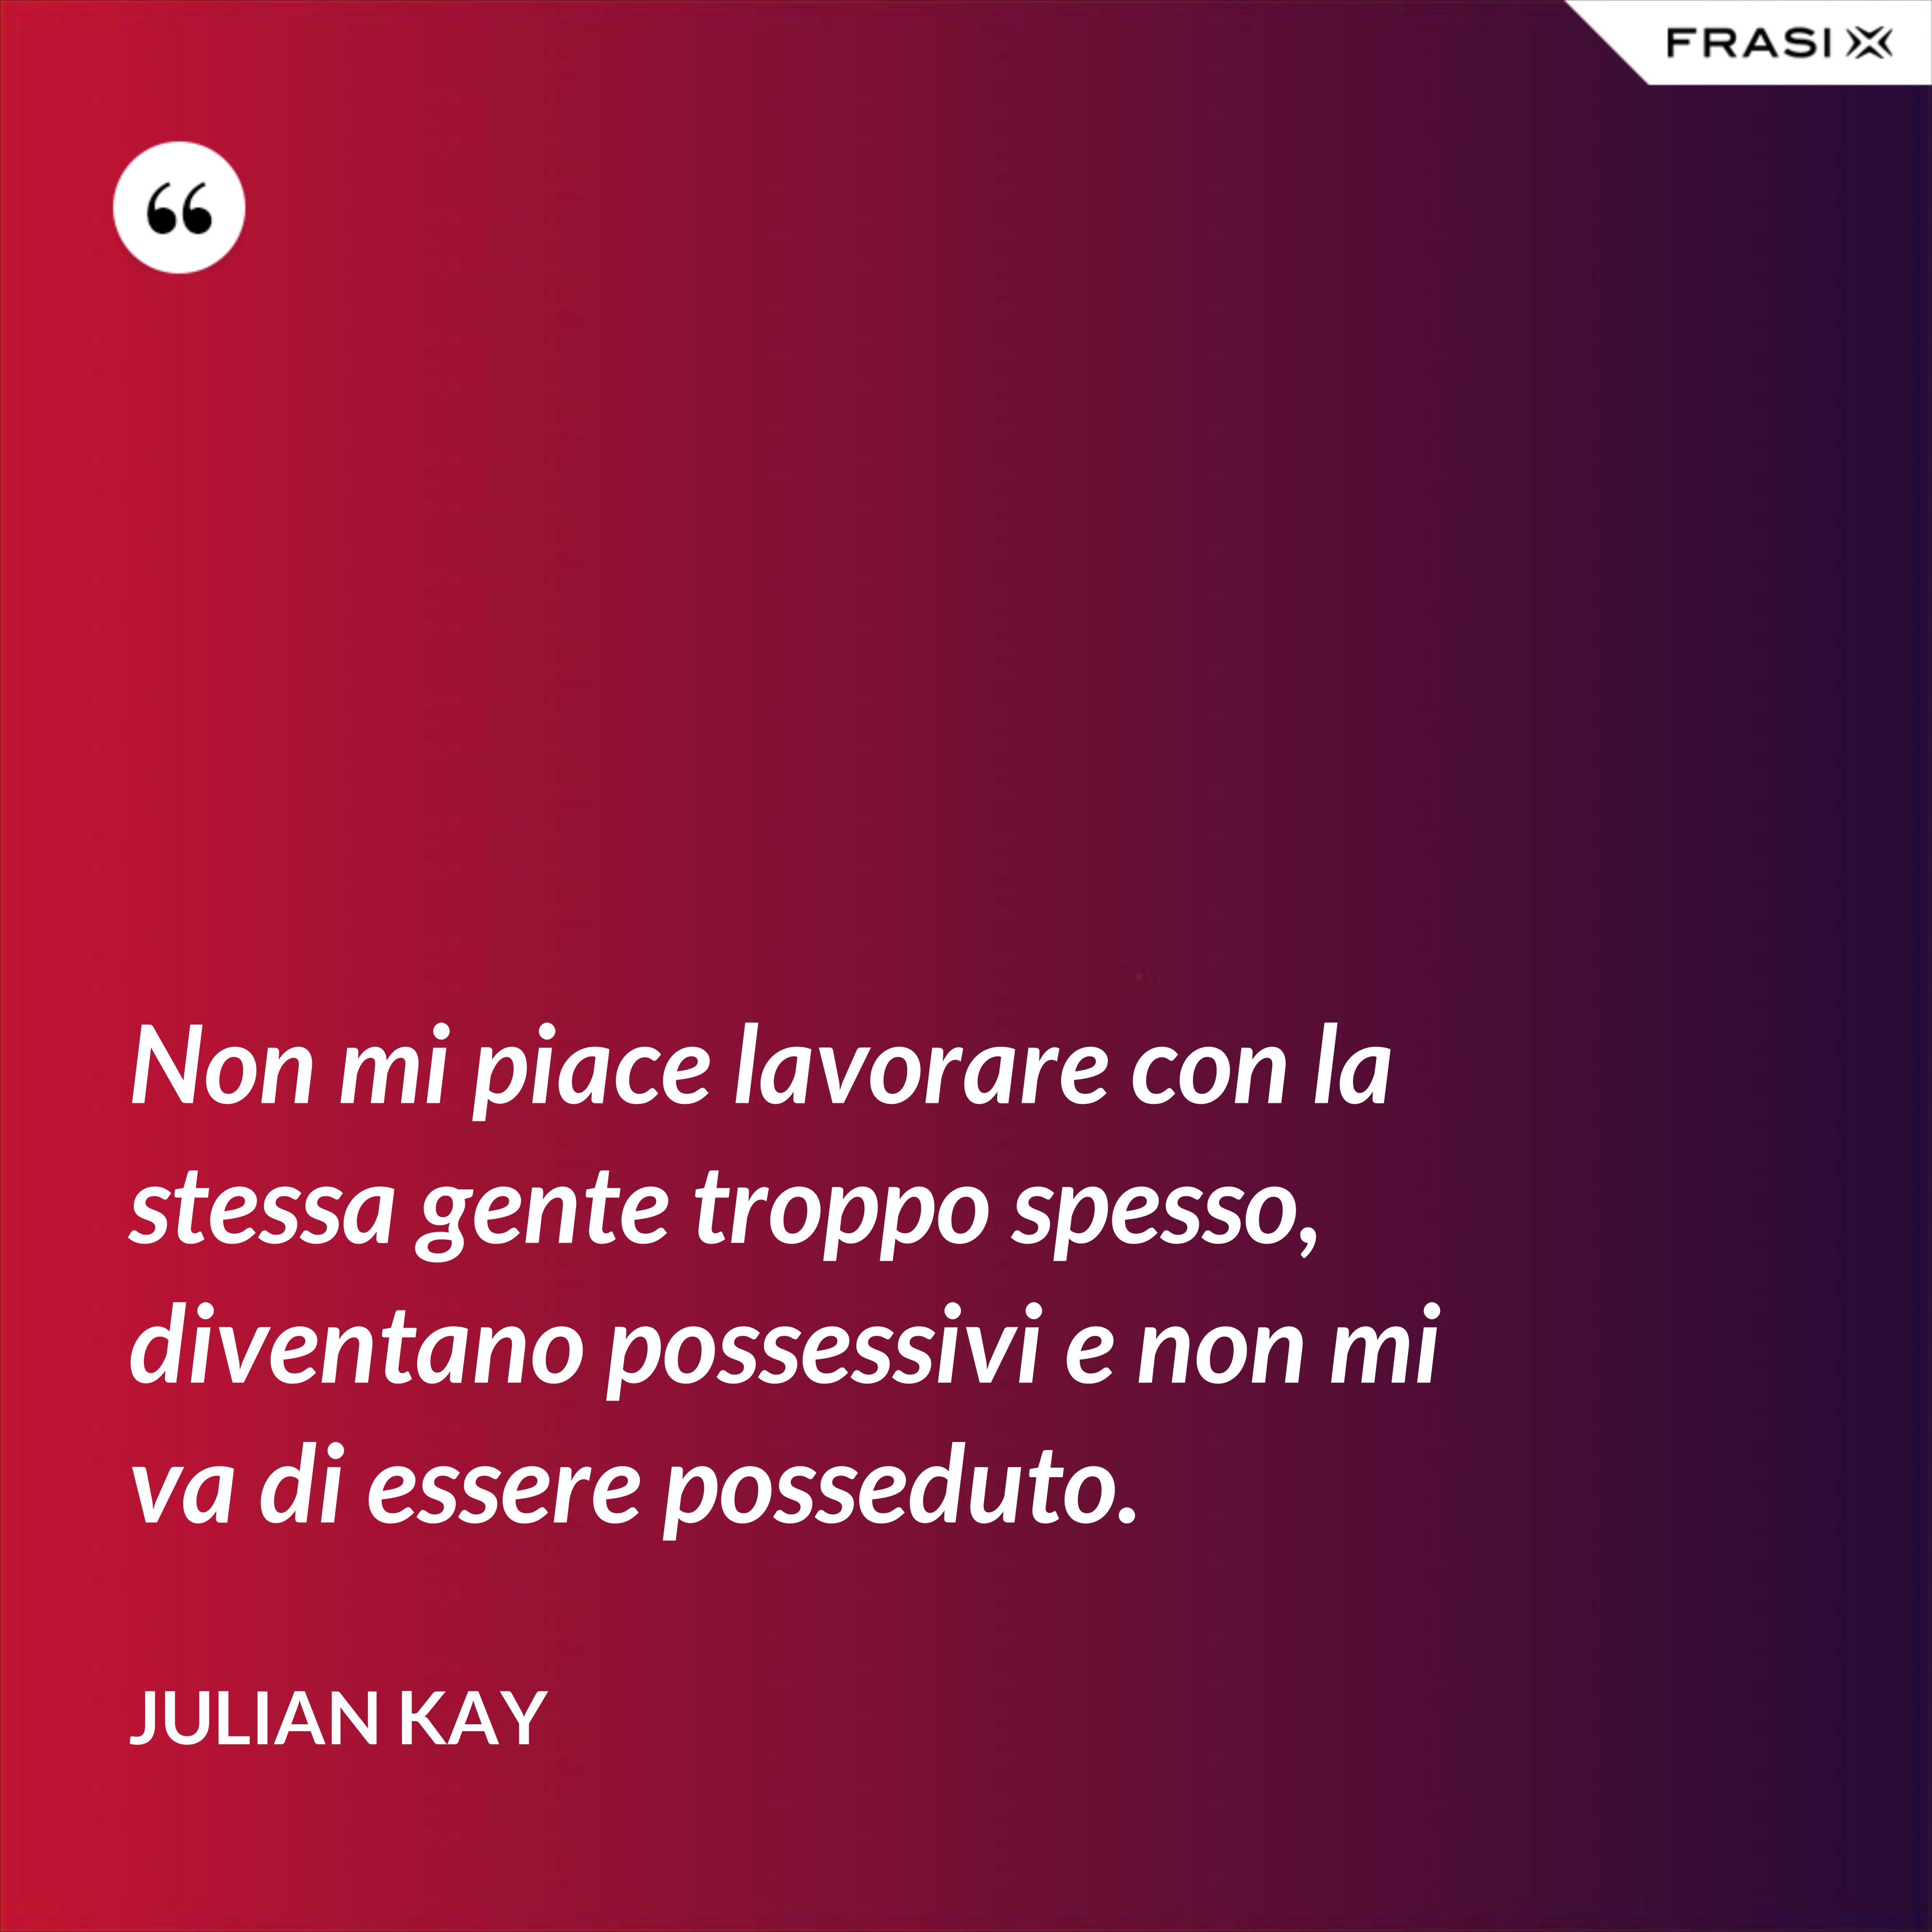 Non mi piace lavorare con la stessa gente troppo spesso, diventano possessivi e non mi va di essere posseduto. - Julian Kay